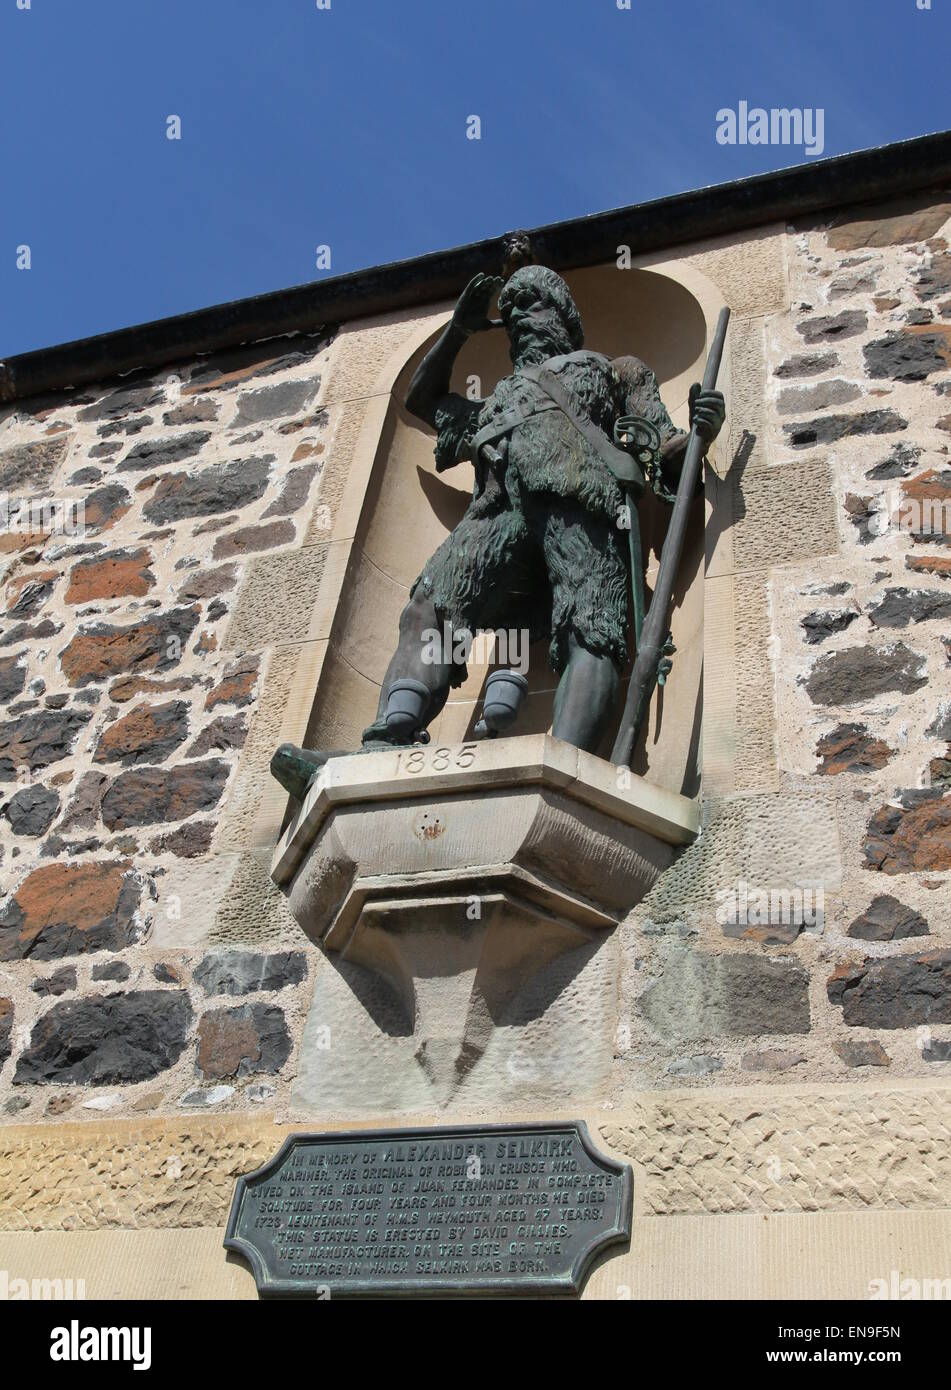 Taille de la vie statue en bronze d'alexander selkirk abaisser largo fife ecosse avril 2015 Banque D'Images